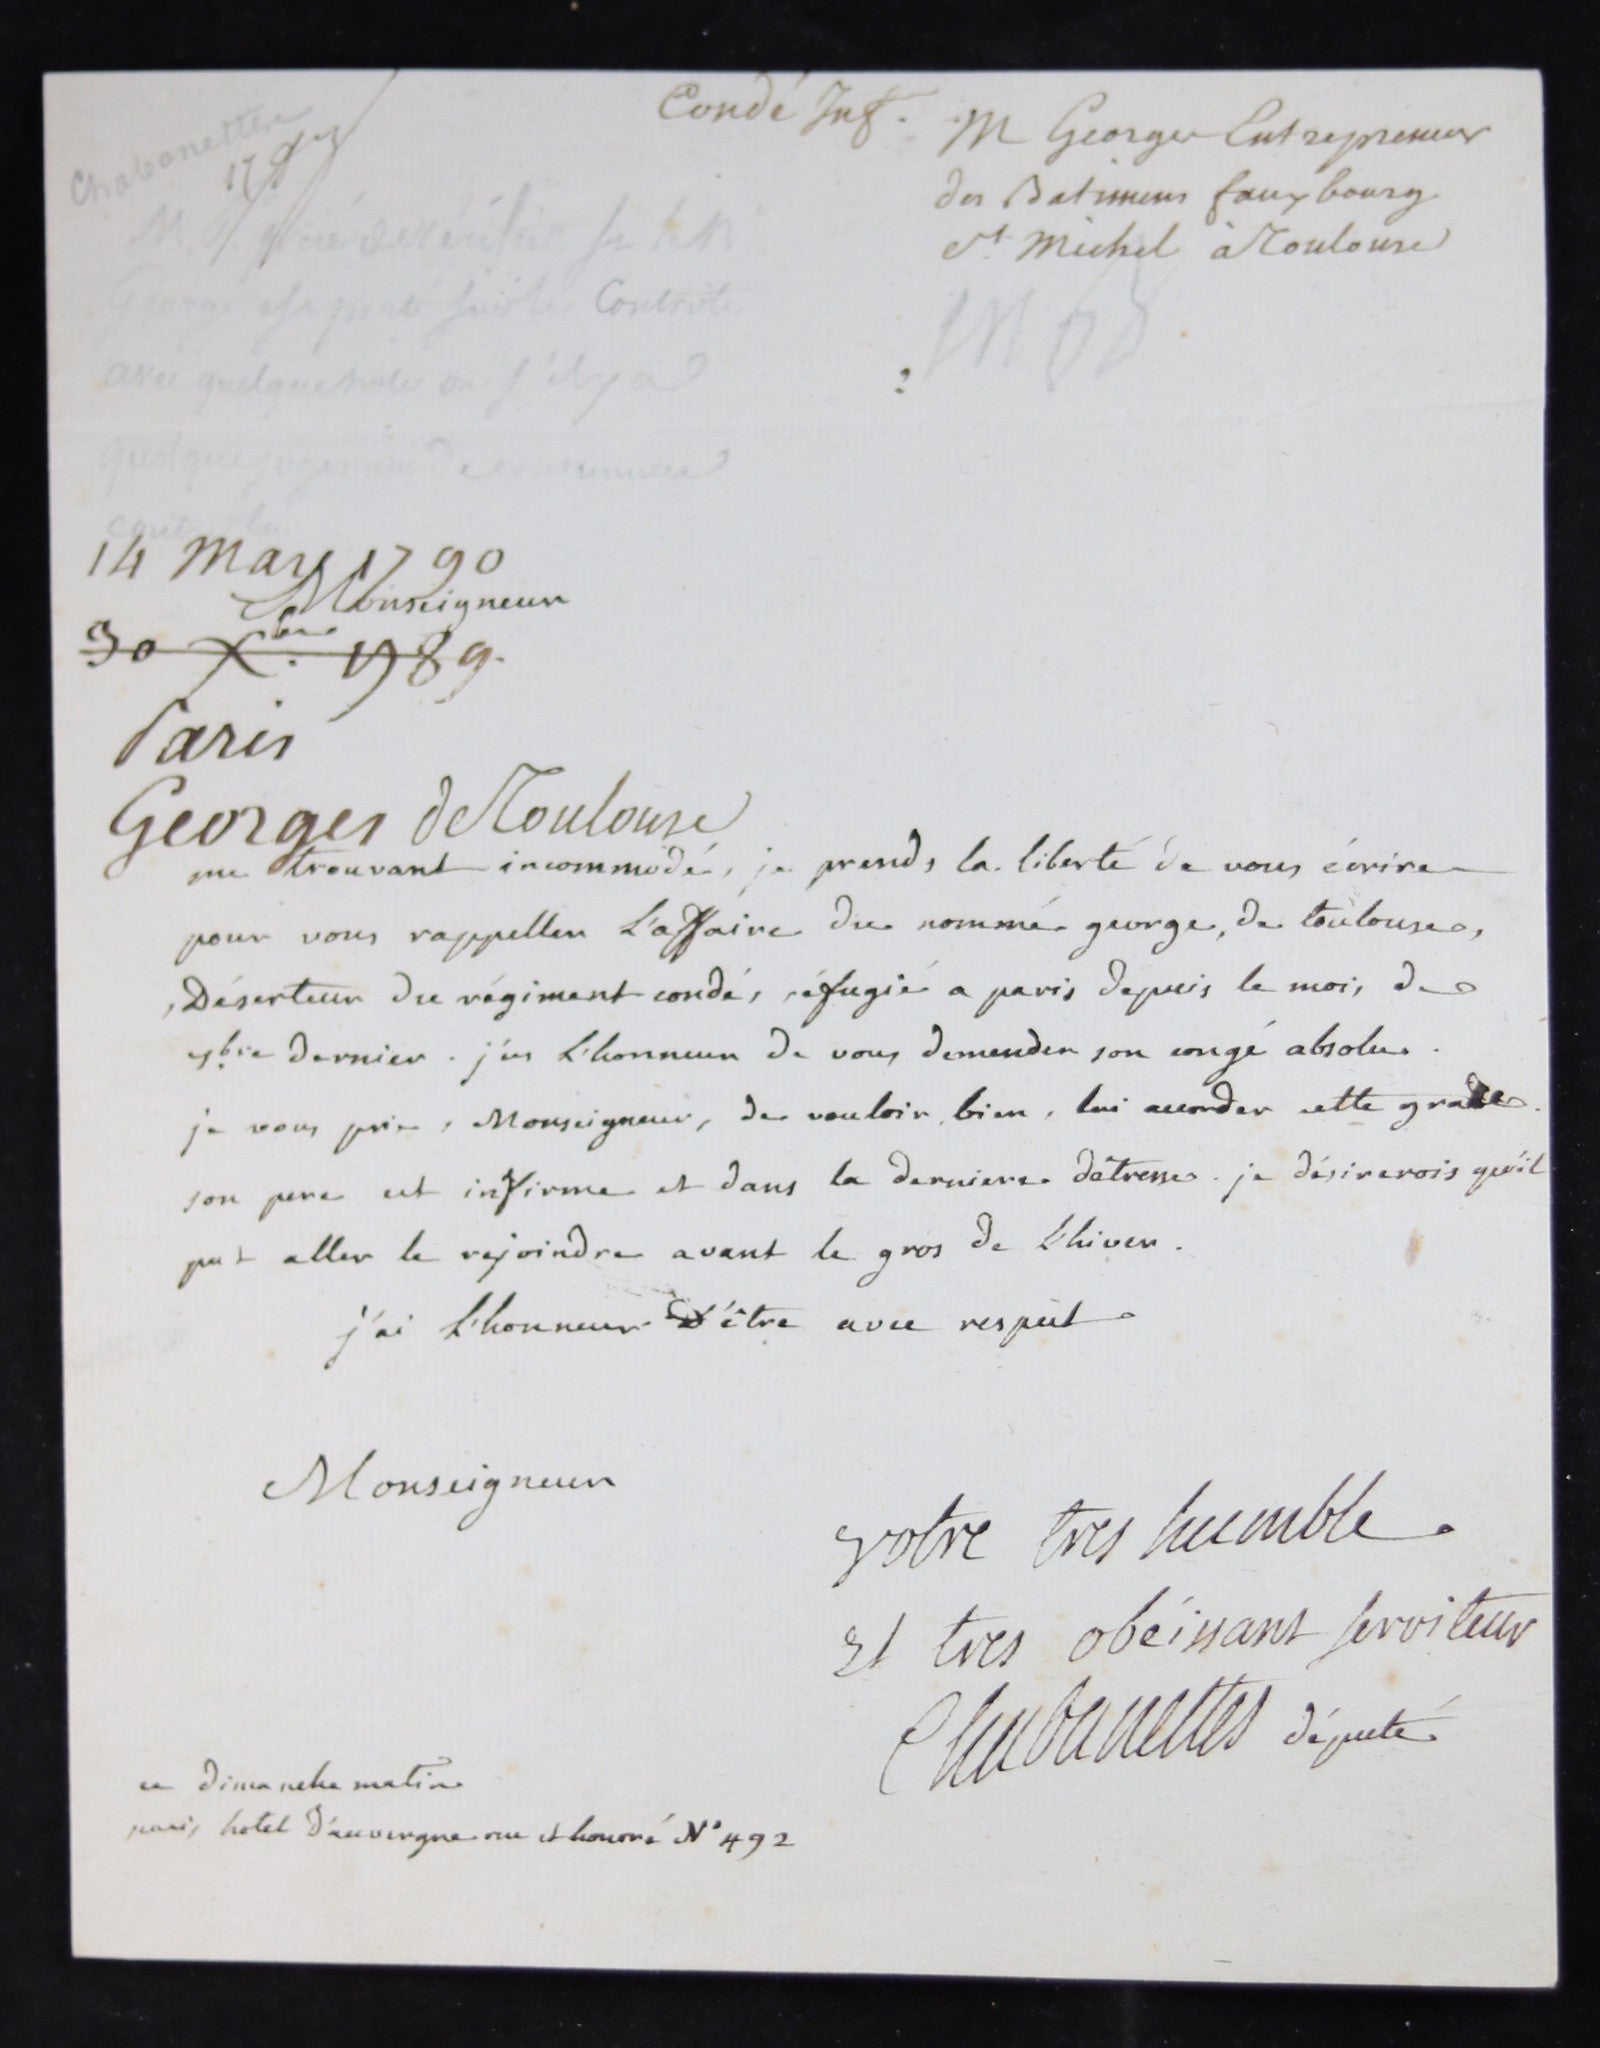 1789 Lettre du député Chabanettes au Ministre de la Guerre Latour Dupin